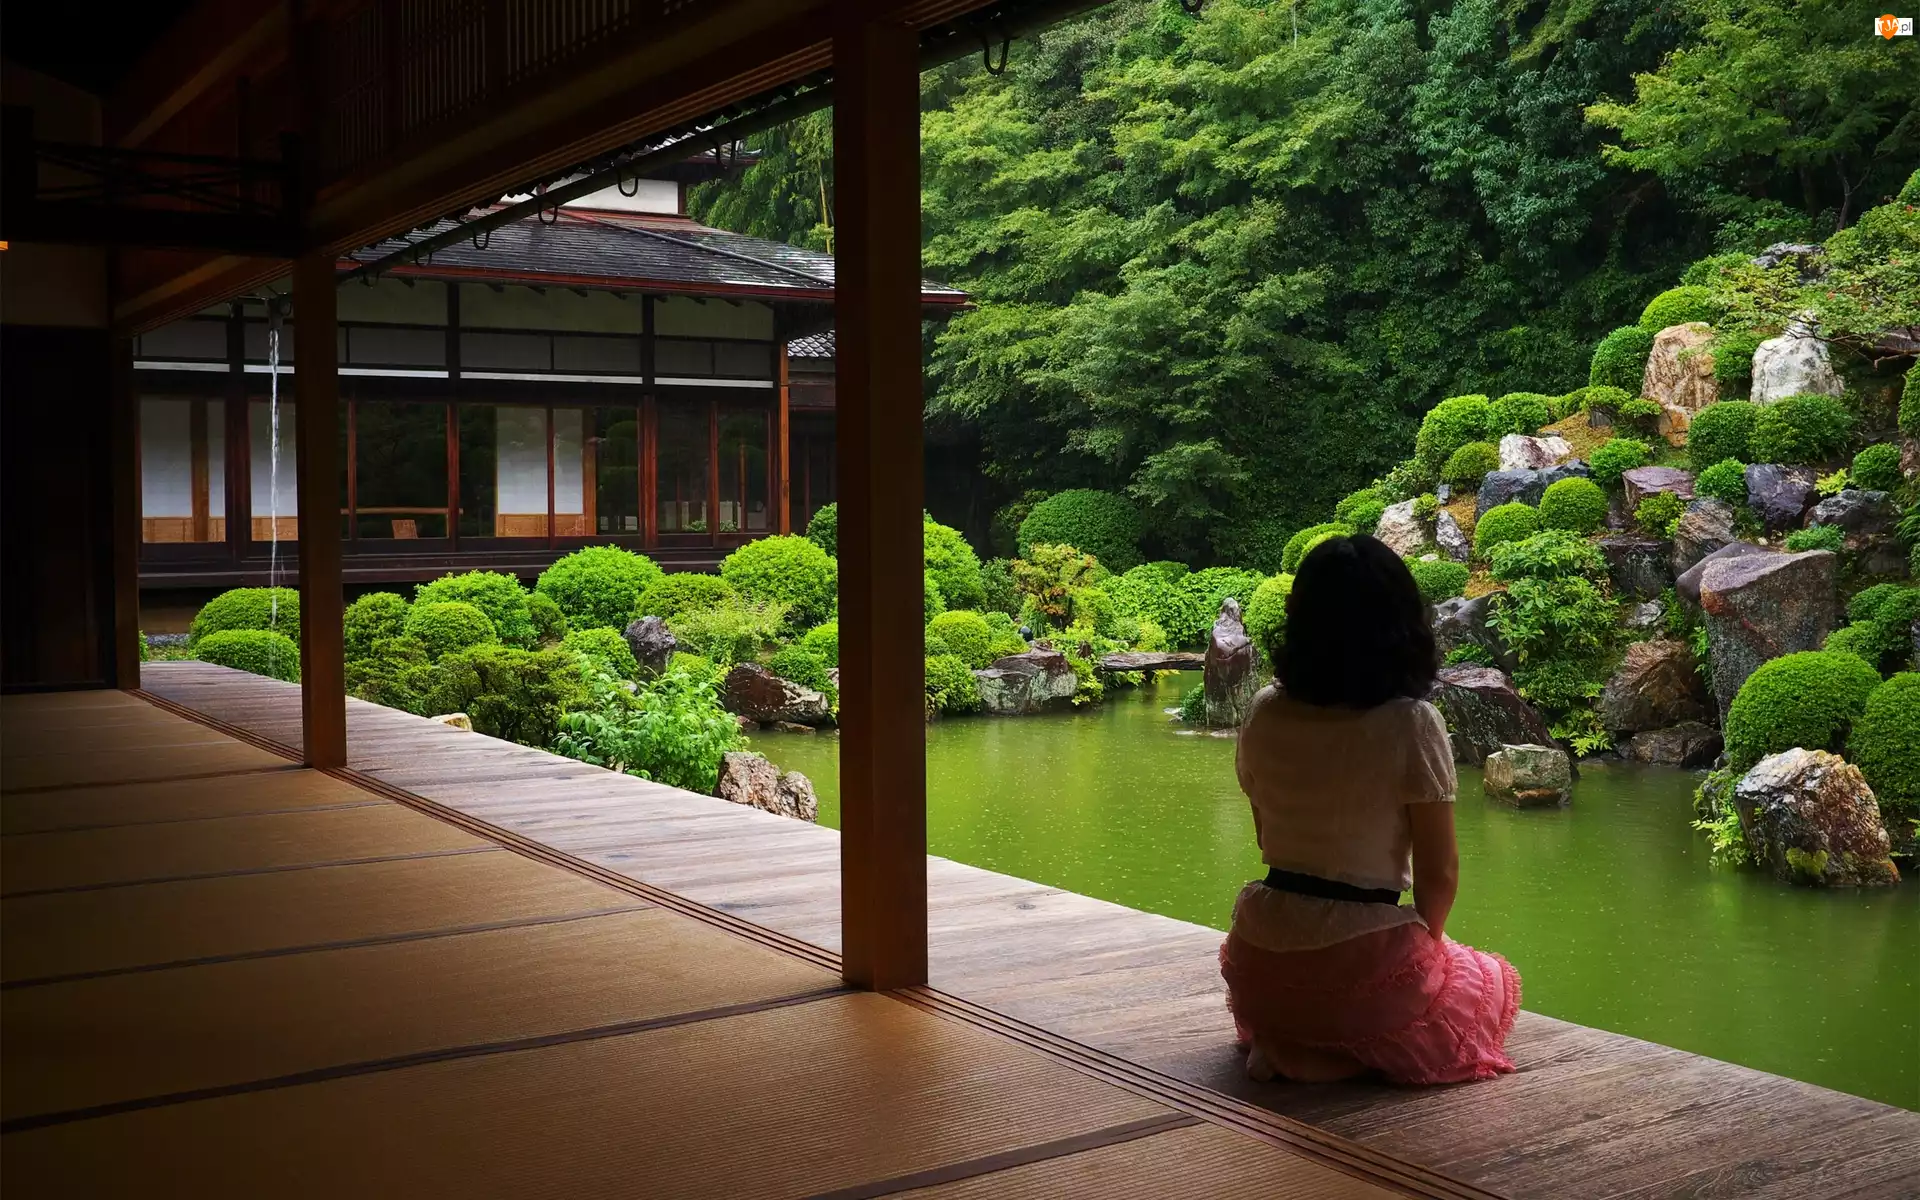 Dom, Dziewczyna, Ogród, Japonia